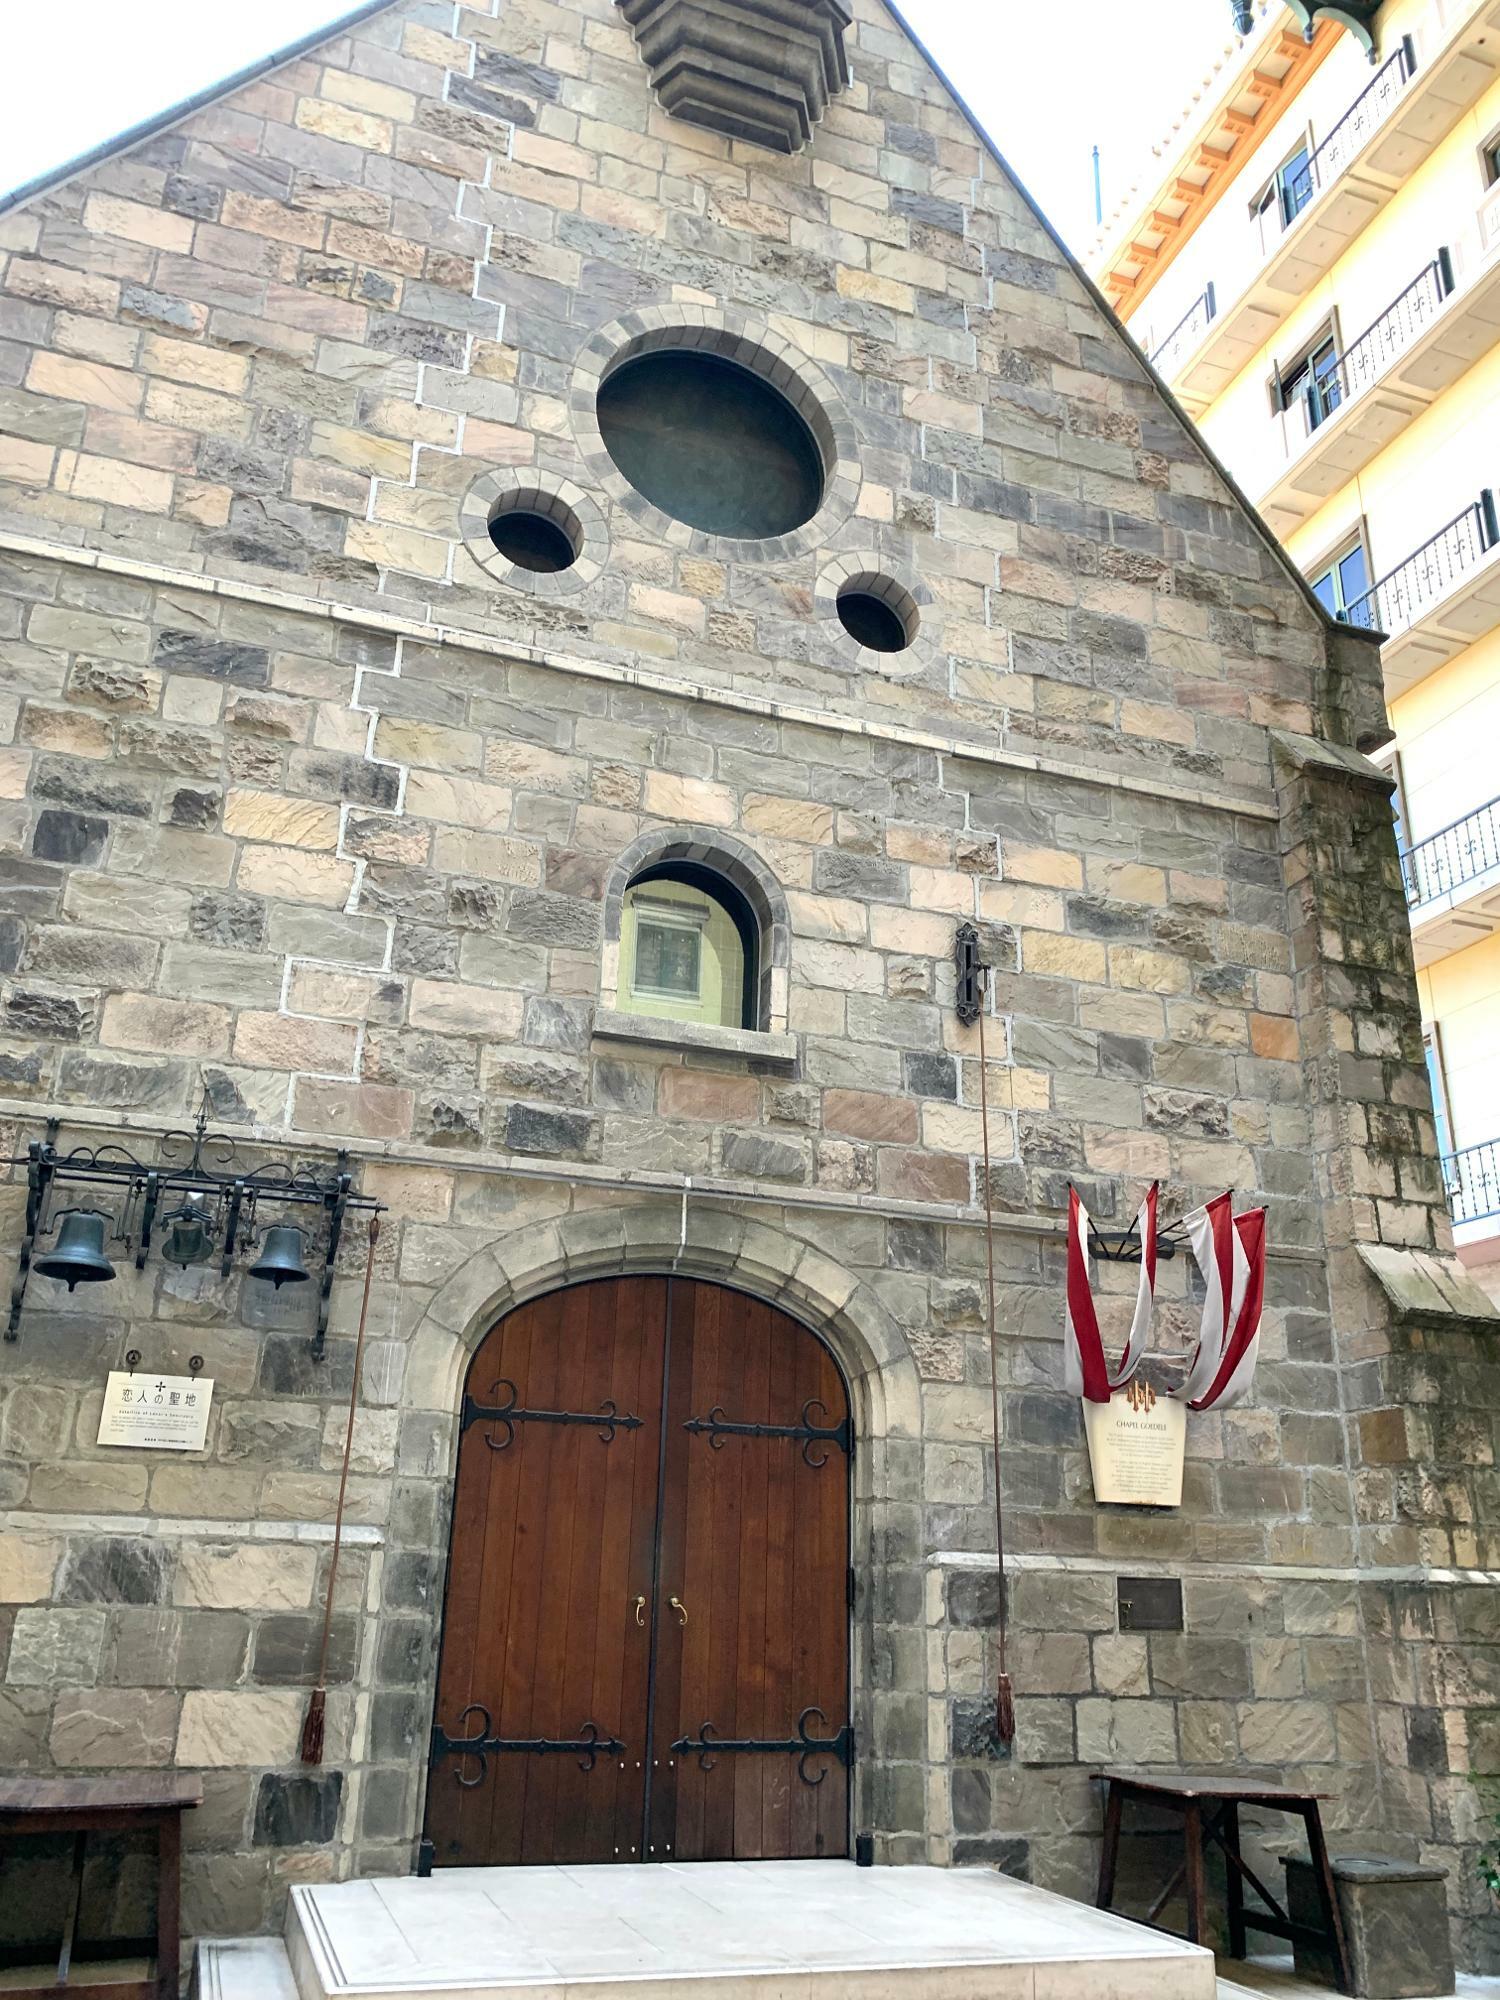 「エスカーレ」の店前には、中世時代のヨーロッパの教会を復元したチャーチも建つ